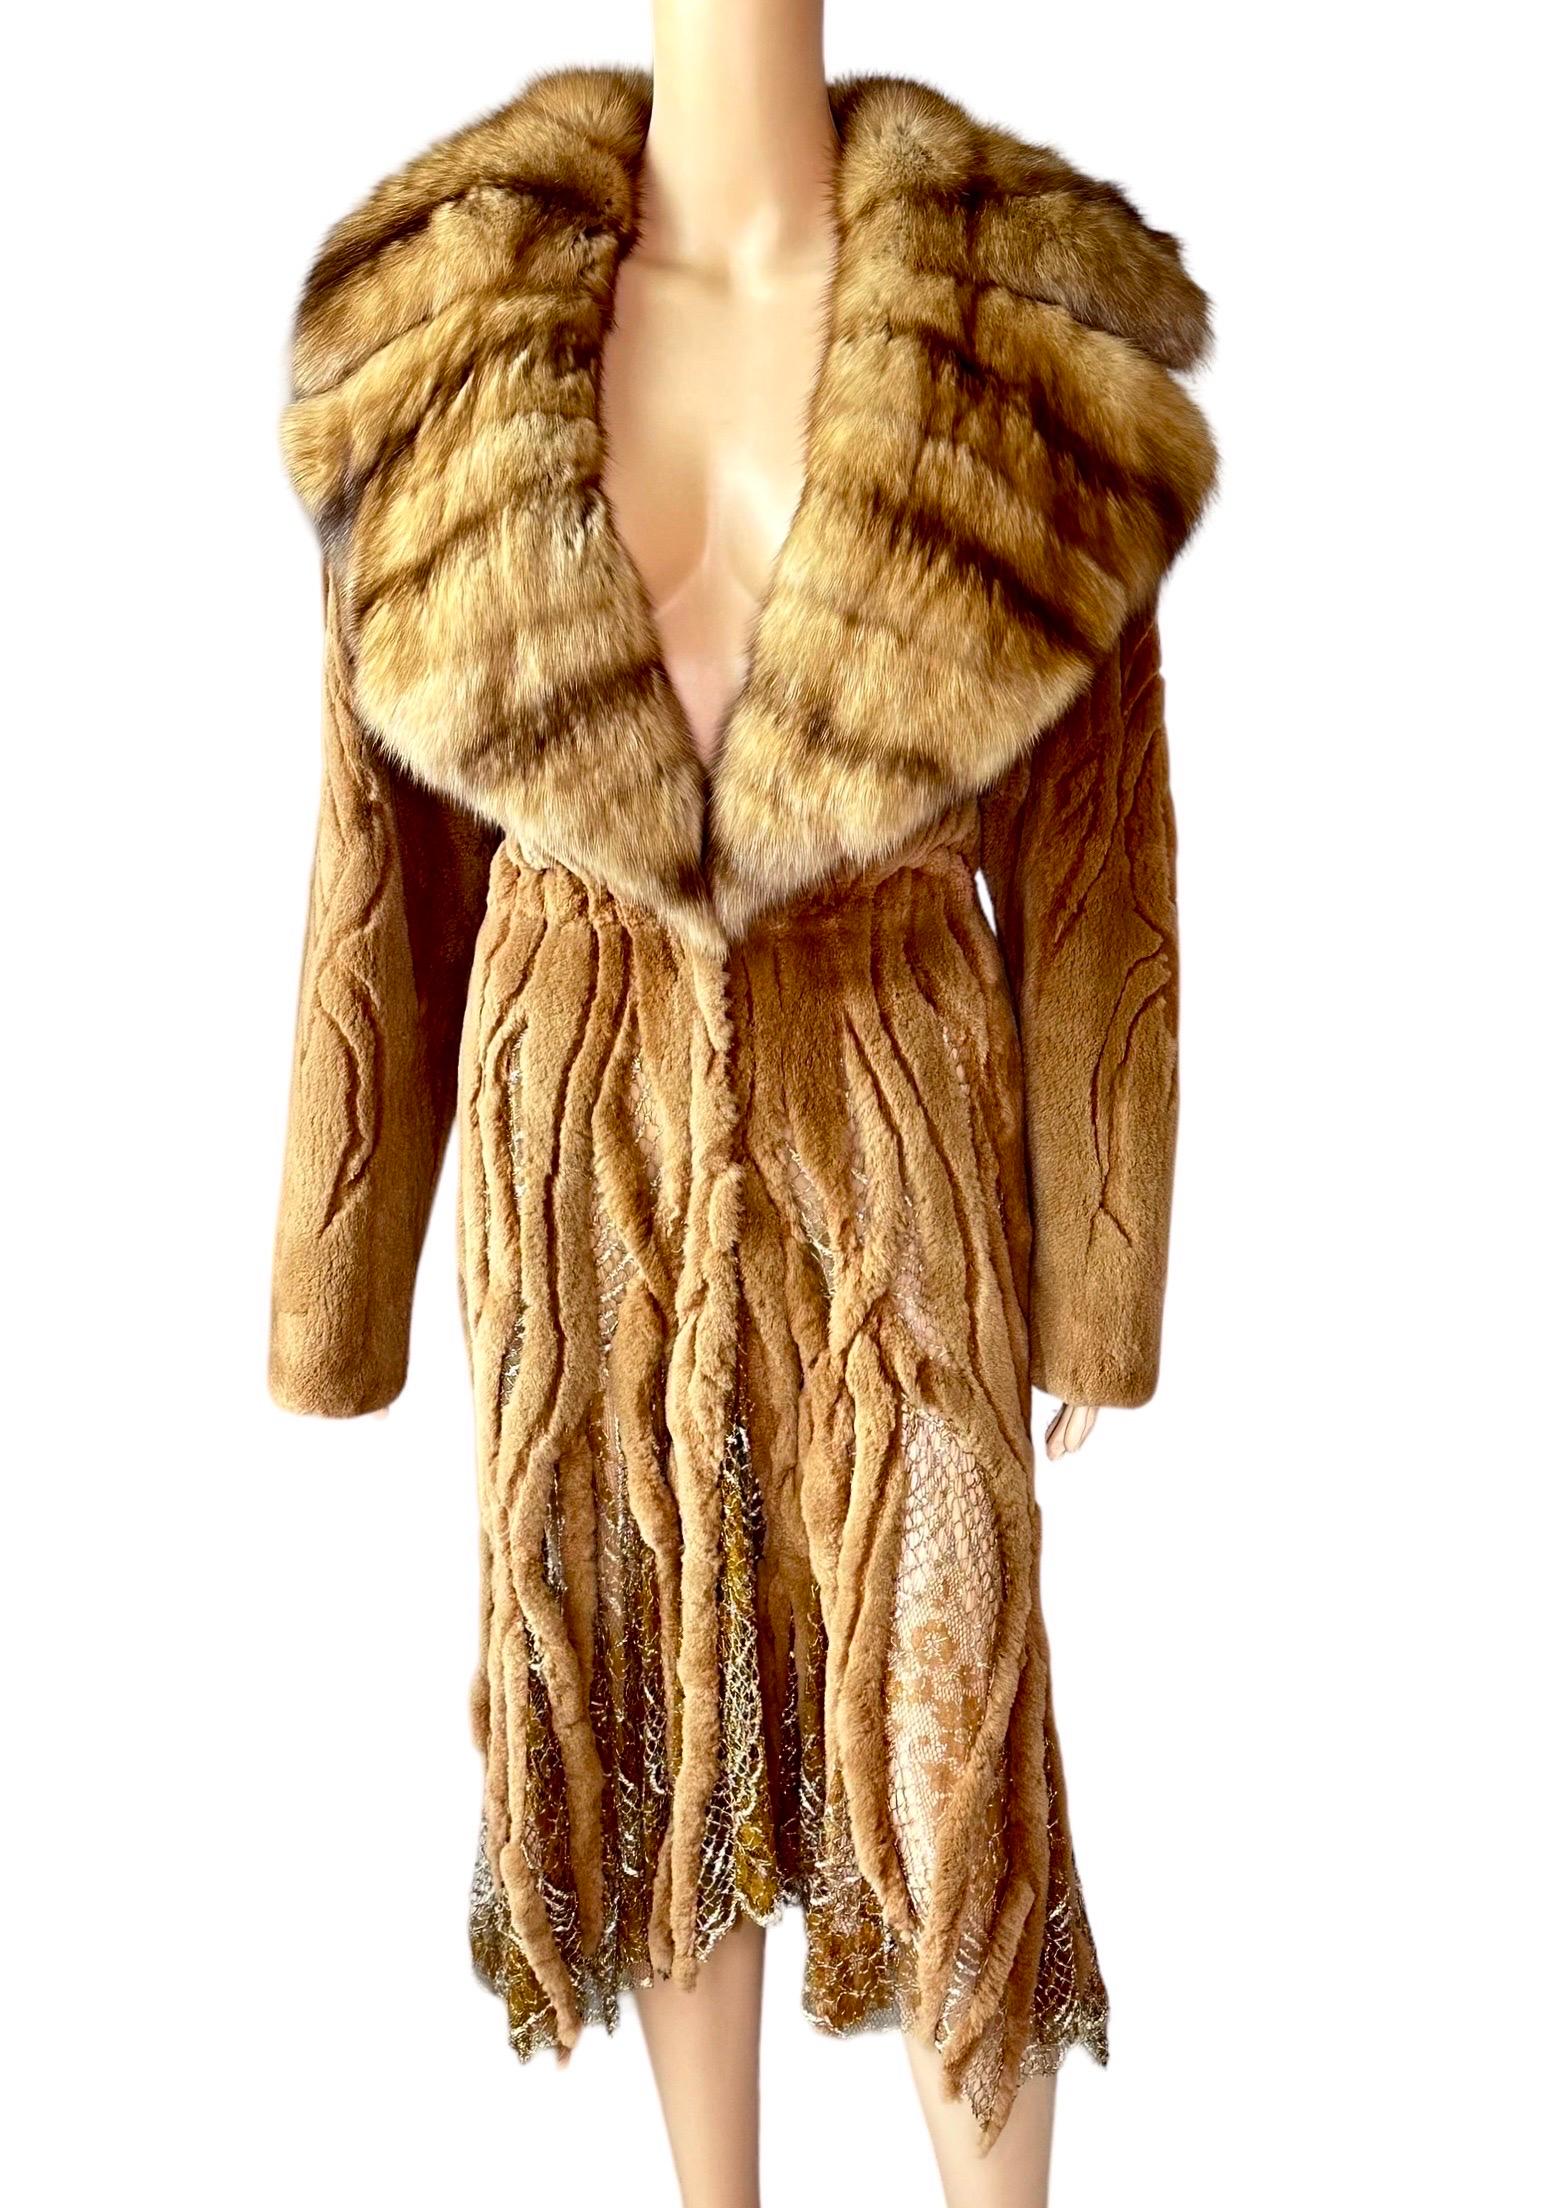 Atelier Gianni Versace c.1996 Fur Cutout Sheer Lace Mesh Panels Jacket Coat For Sale 4